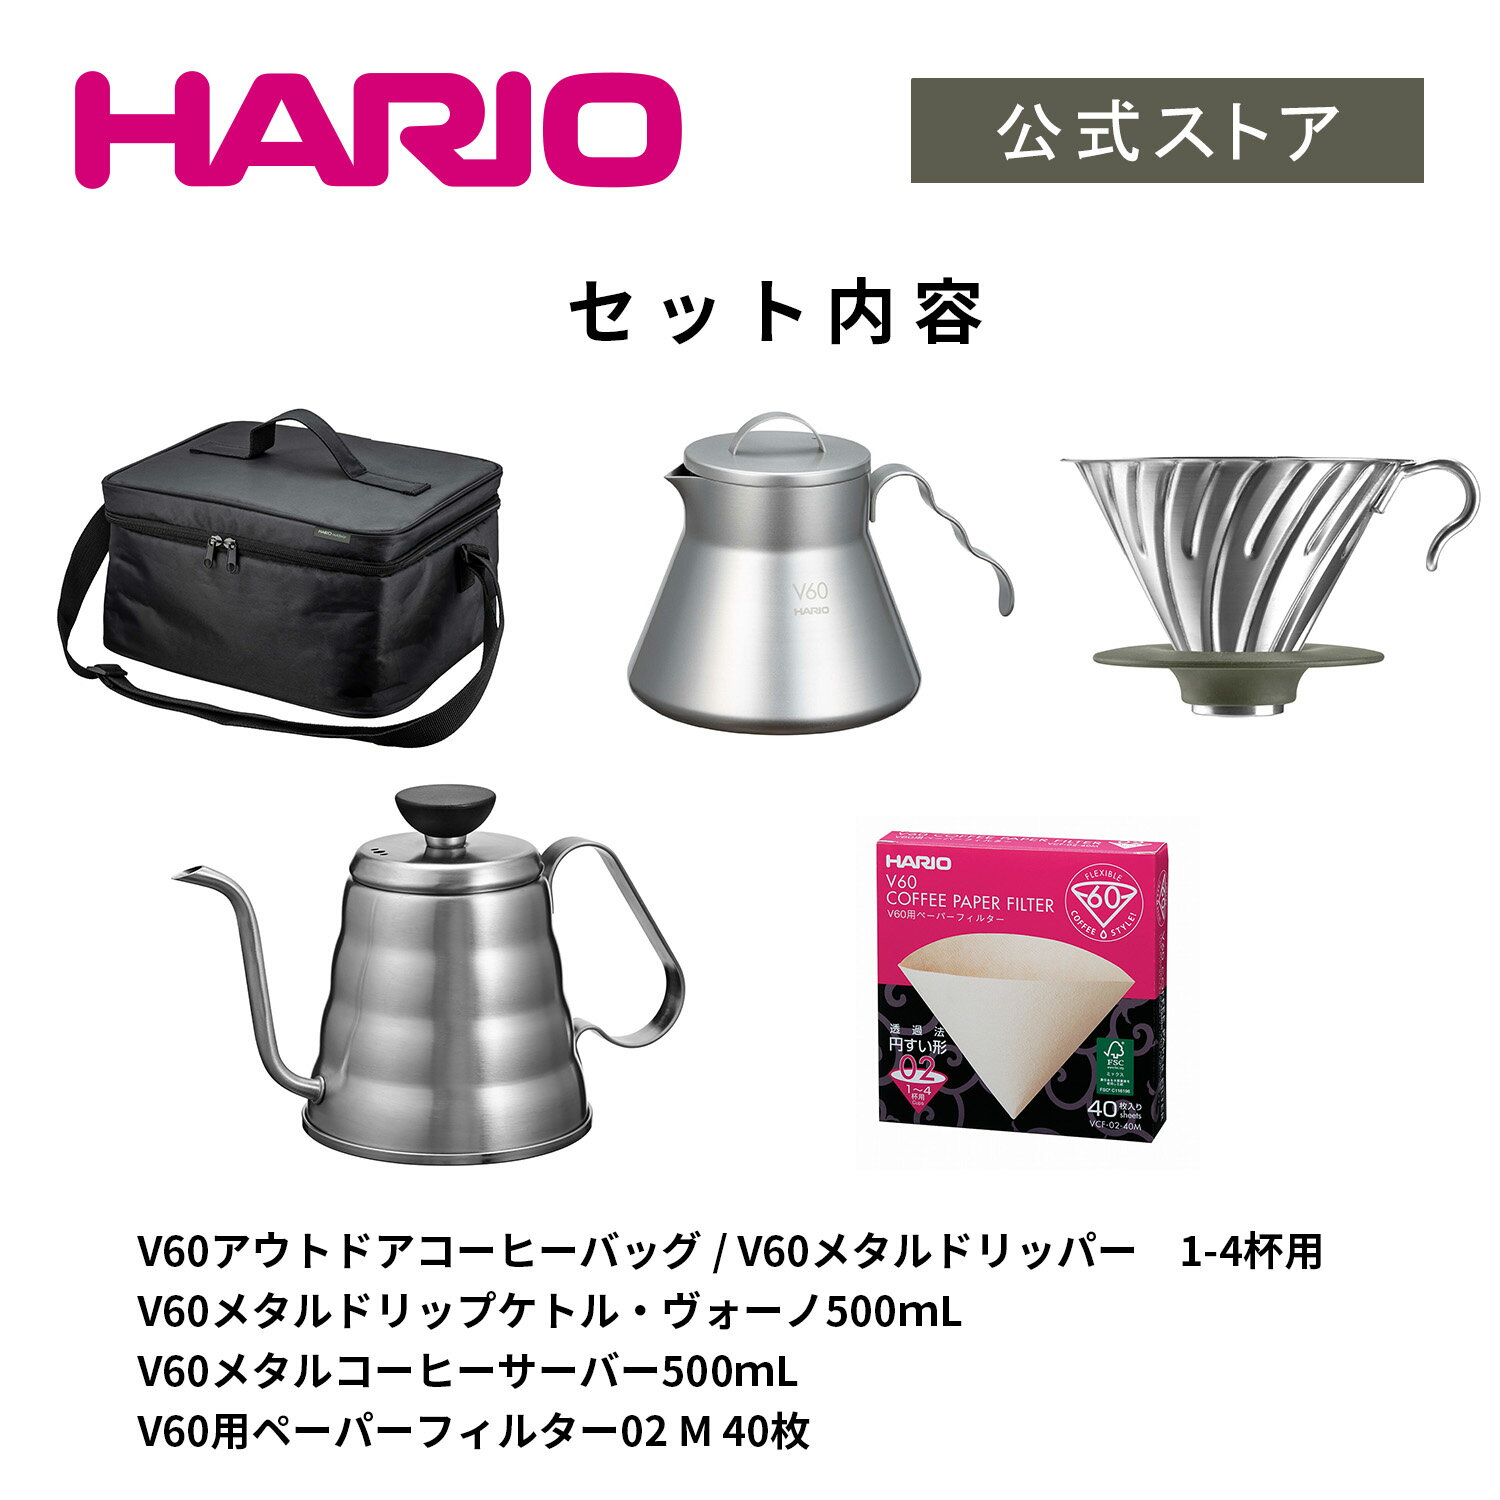 【公式ショップ】V60 アウトドアコーヒーベーシックセット　HARIO ハリオ 公式 コーヒーサーバー 割れない 直火 アウトドア キャンプ用品 キャンプ 持ち運び セット コーヒーポット ステンレス シルバー アウトドアコーヒーバッグ バッグ 2